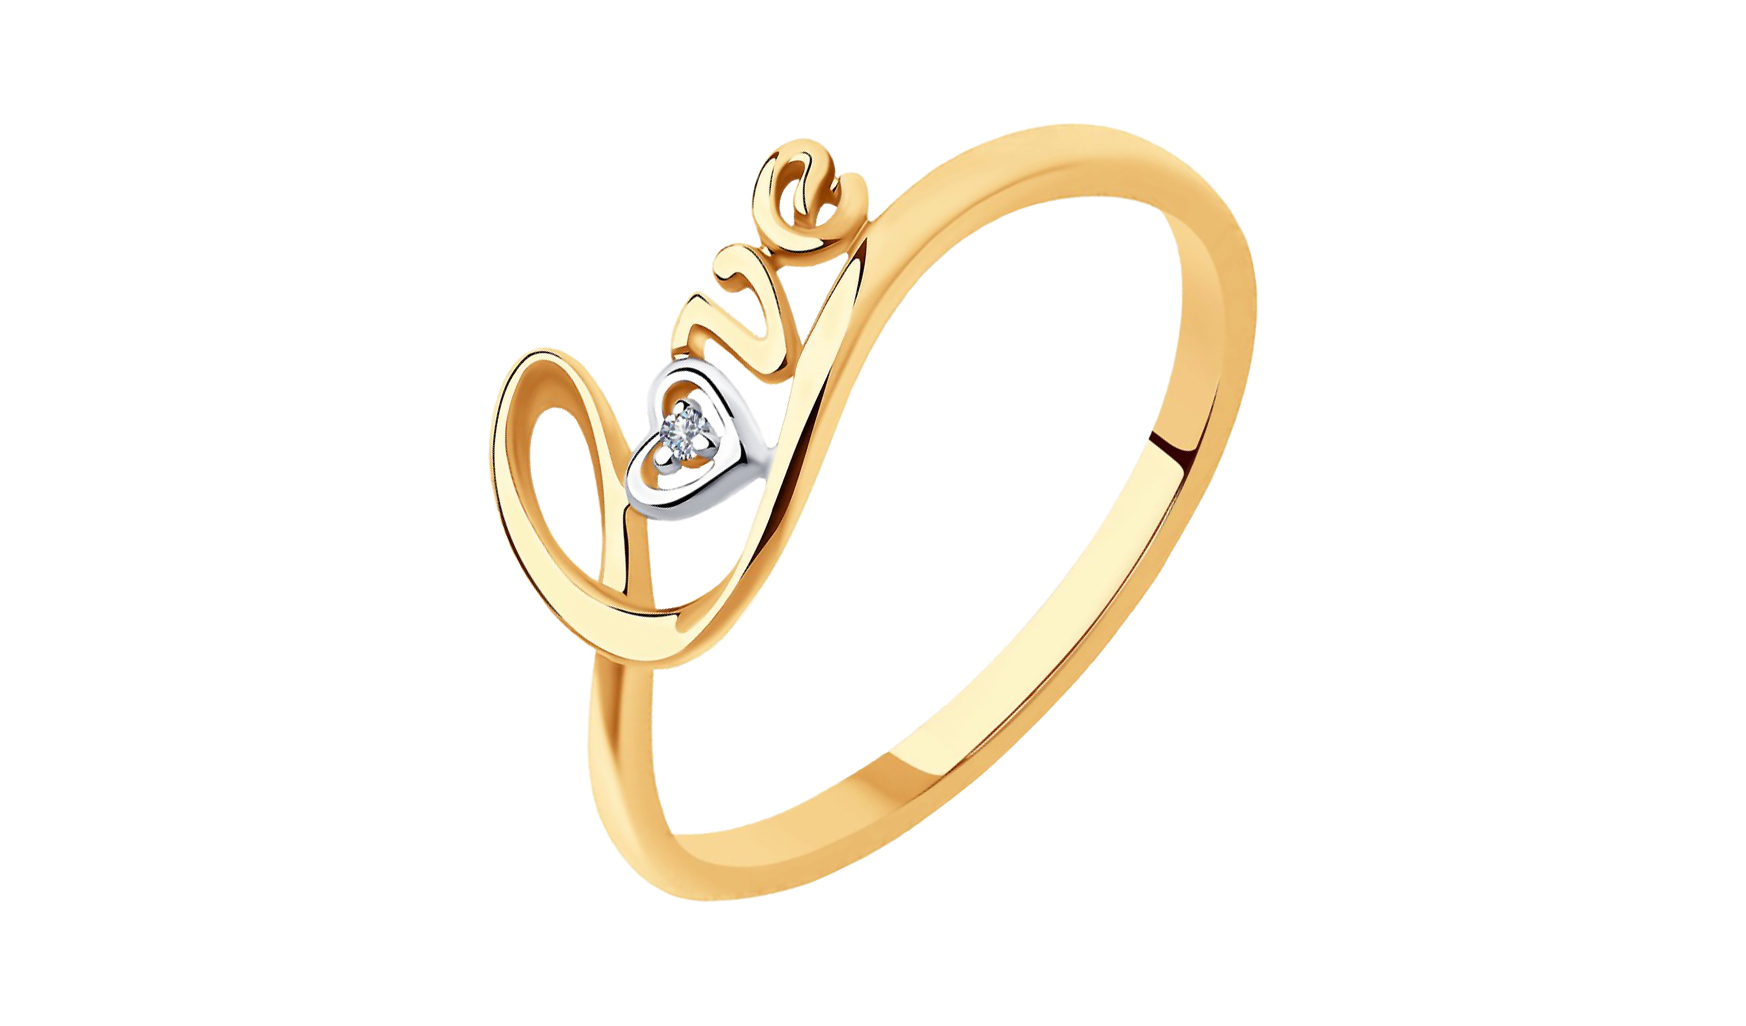 Золотое кольцо SOKOLOV 1011736 С бриллиантом. Золотое кольцо SOKOLOV 1011512 С бриллиантом. Золотое кольцо фото вид спереди на белом фоне. Act of Love SOKOLOV. Качество золота соколов